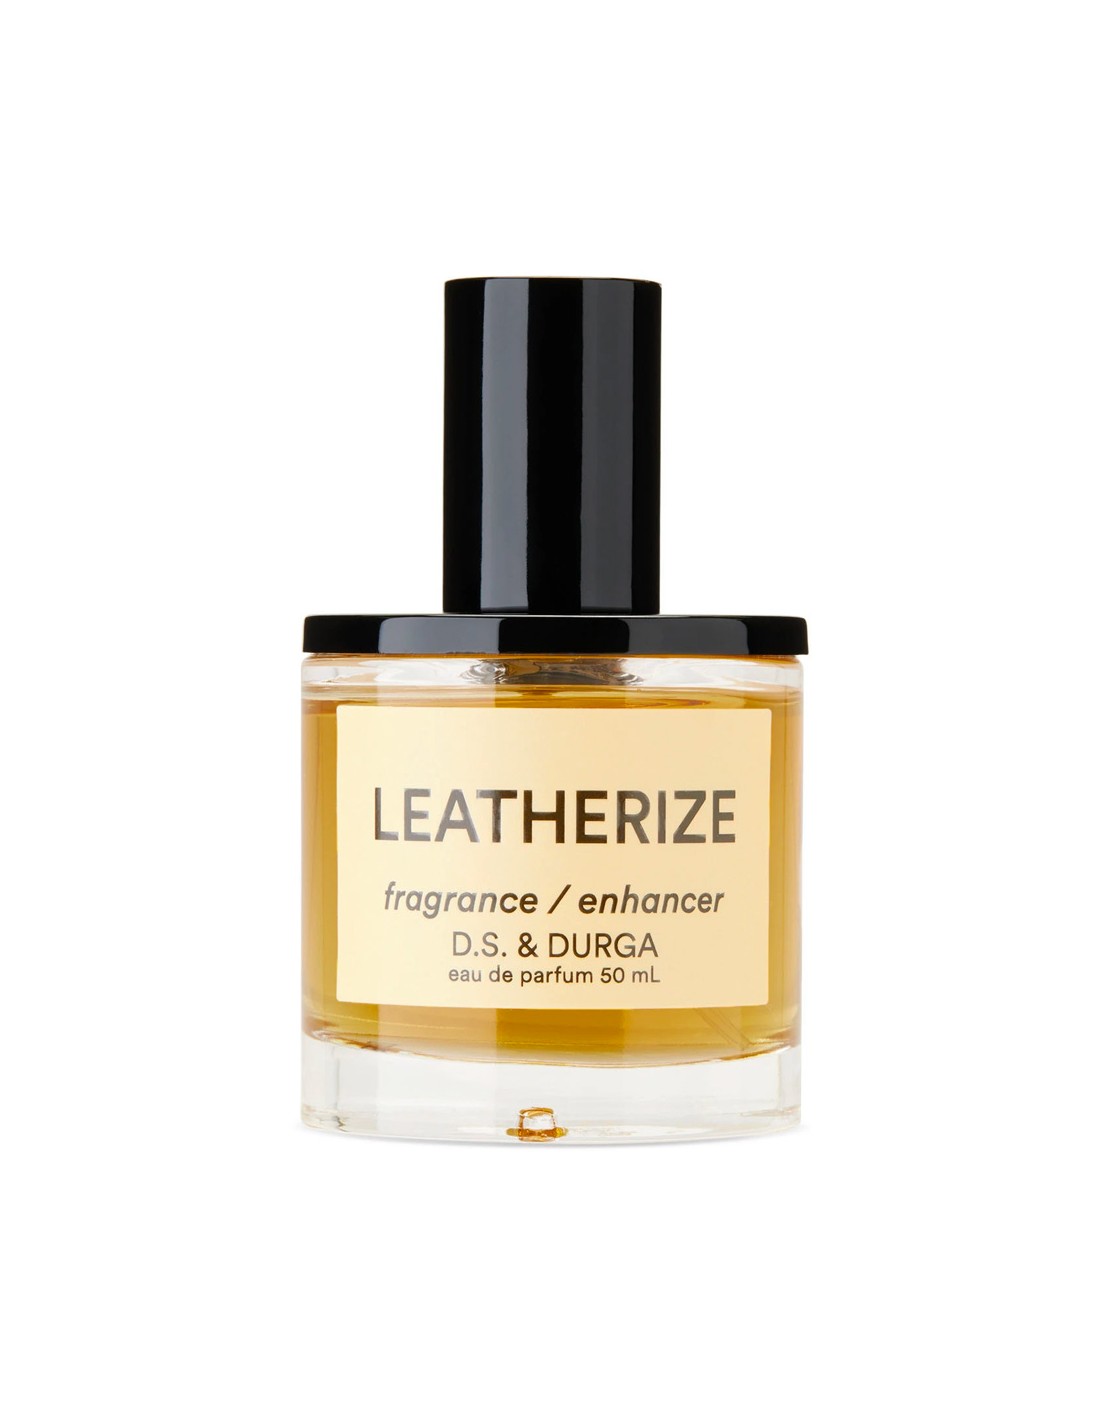 LEATHERIZE Eau de Parfum - 50 ml